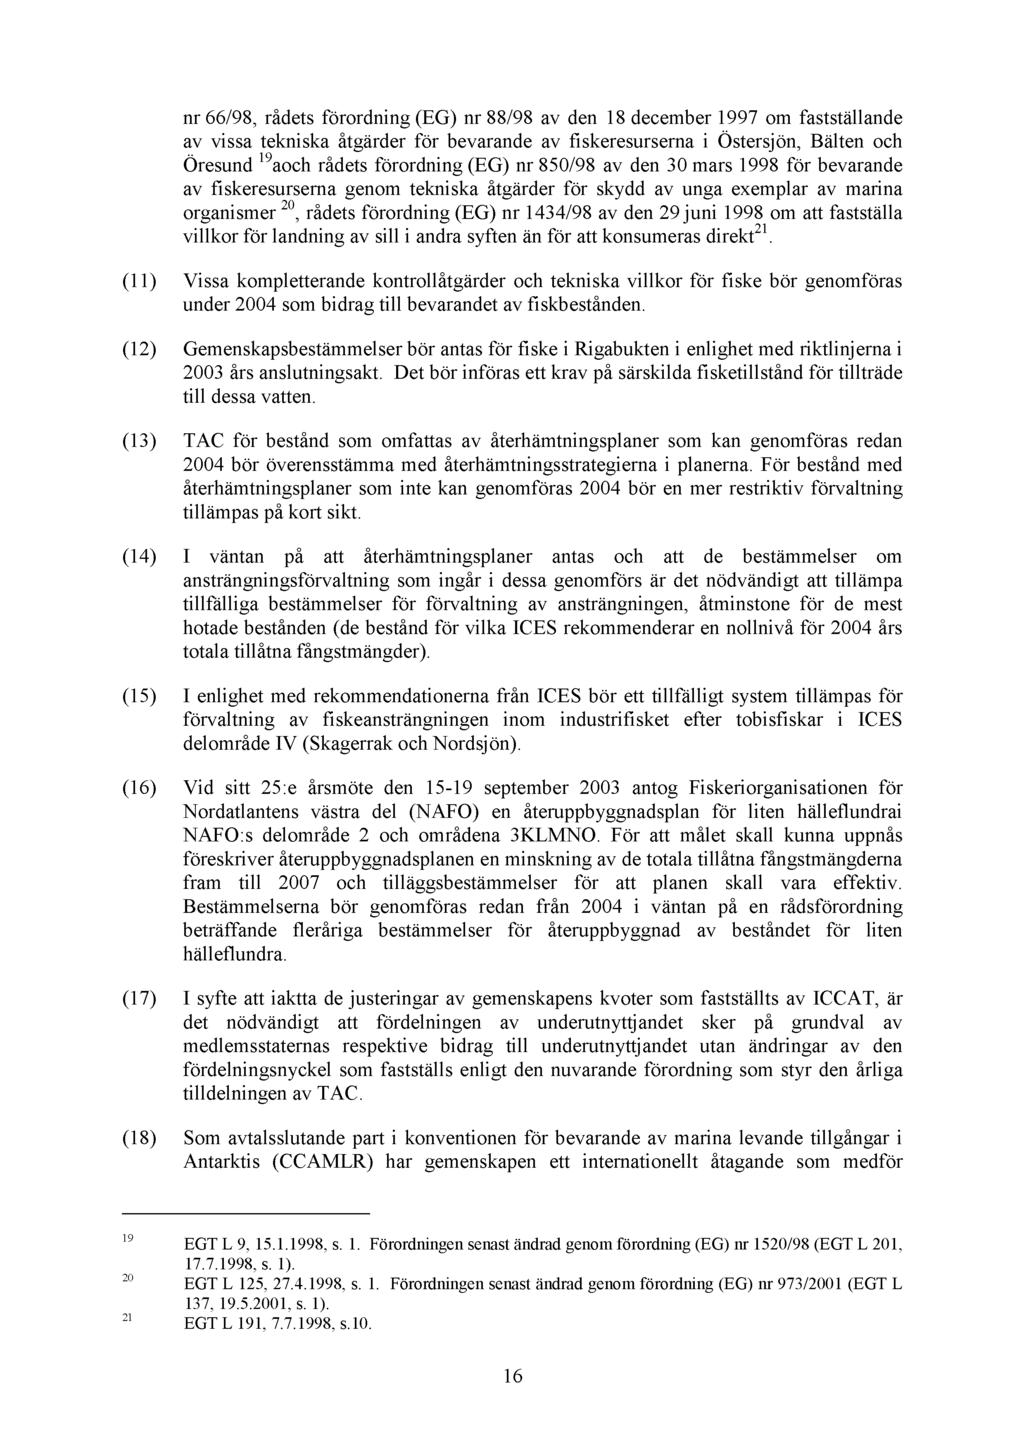 nr 66/98, rådets förordning () nr 88/98 av den 18 december 1997 om fastställande av vissa tekniska åtgärder för bevarande av fiskeresurserna i Östersjön, Bälten och Öresund 19 aoch rådets förordning